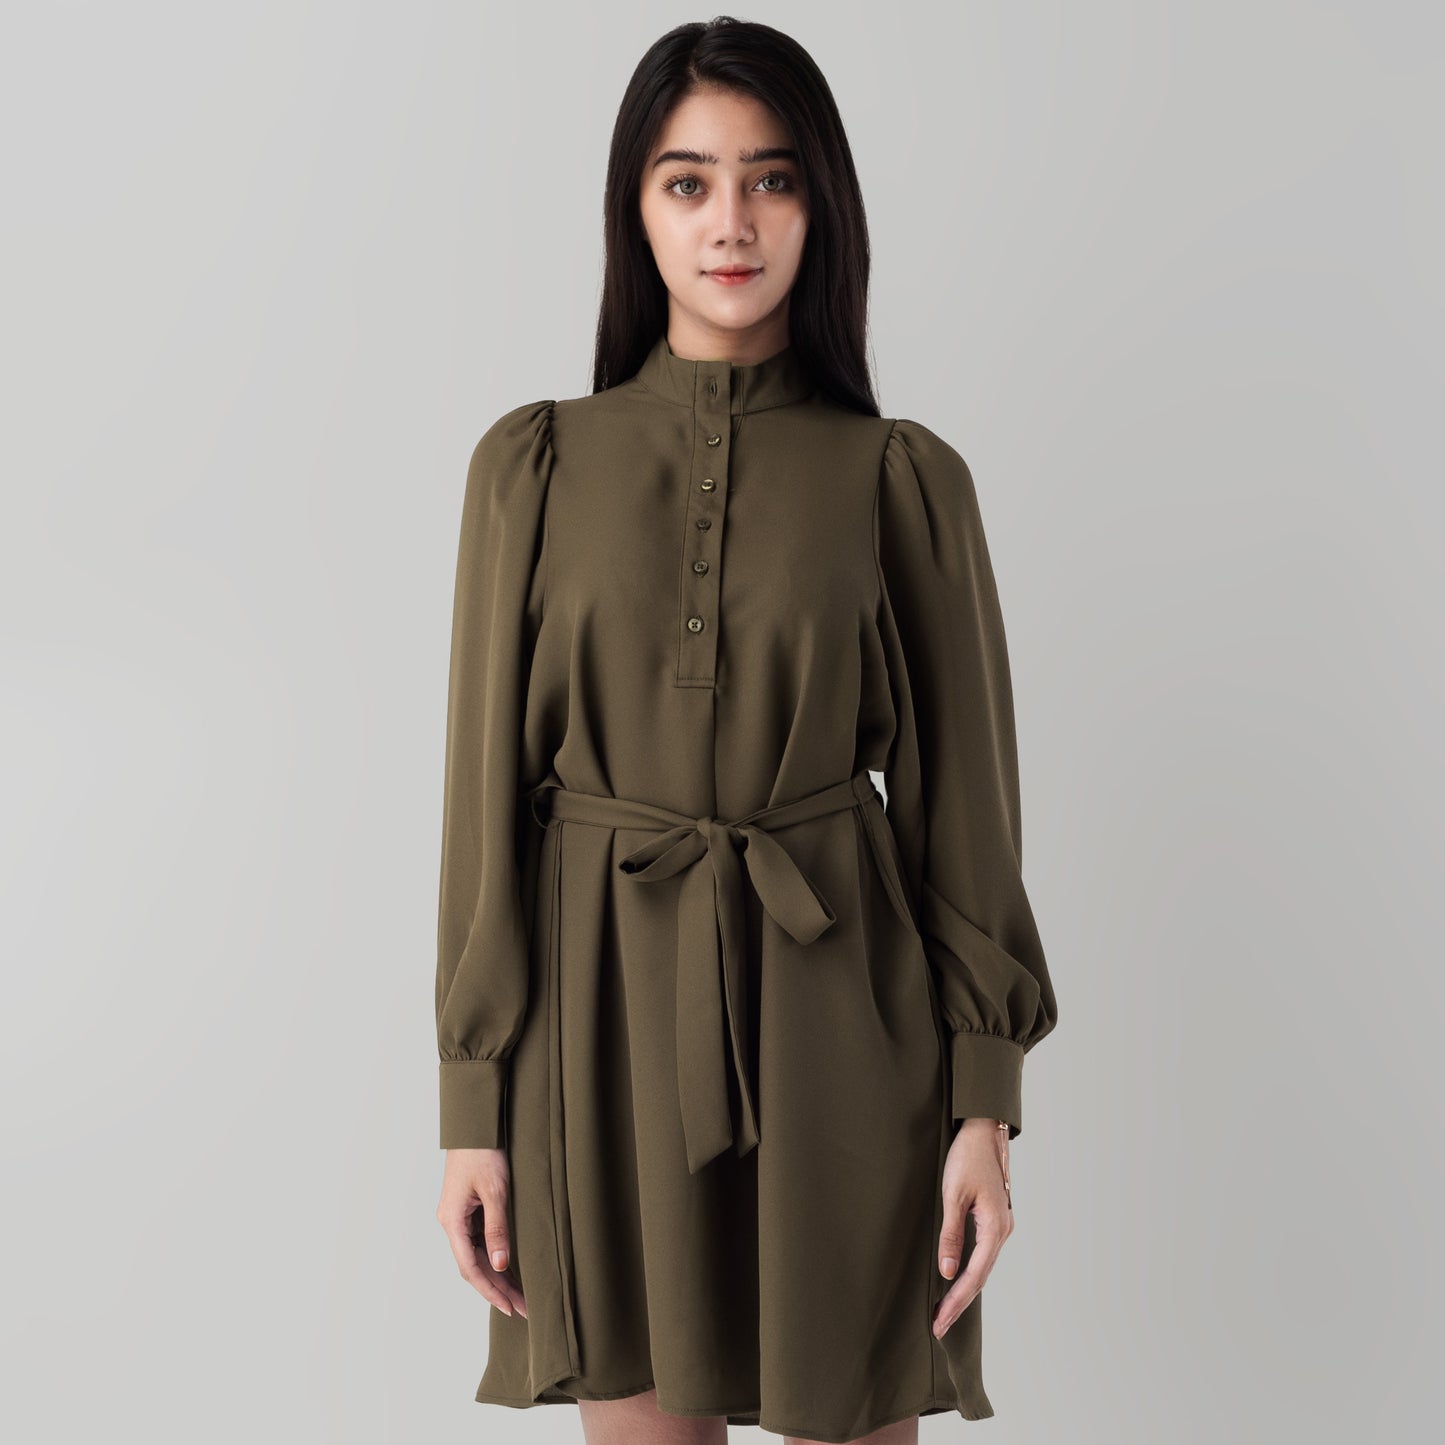 Benhill "Mira" Dress Tunik Wanita Hijau Army 825-39E77